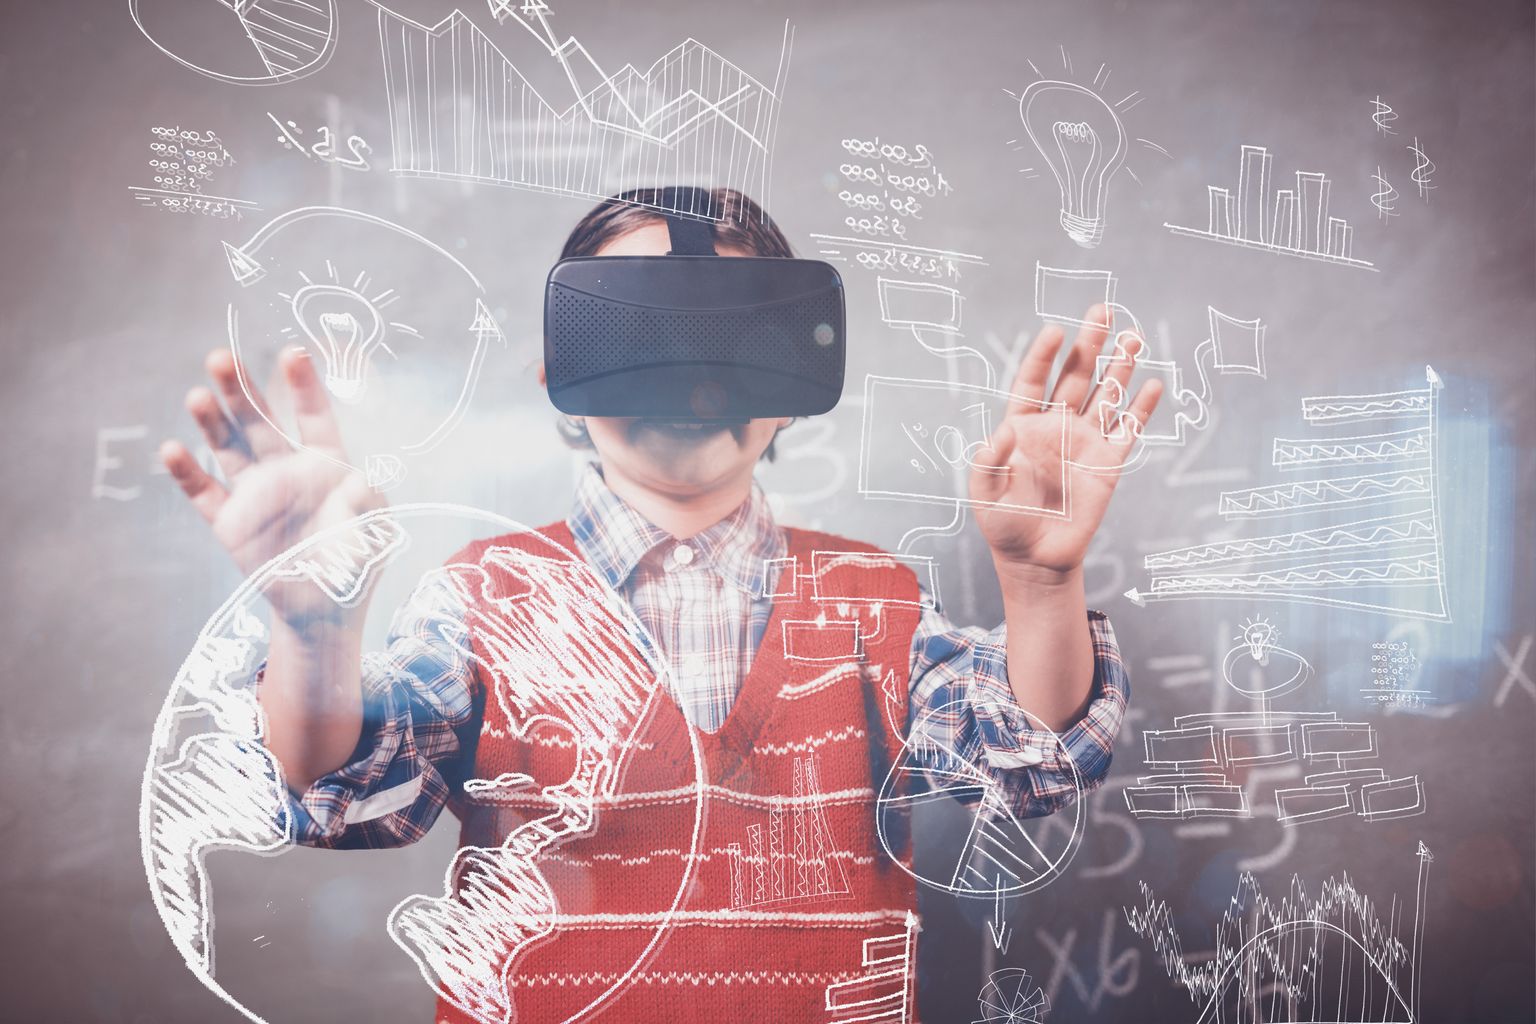 Tulevikus võiks õppeprotsessi üha enam kaasata virtuaalreaalsust.